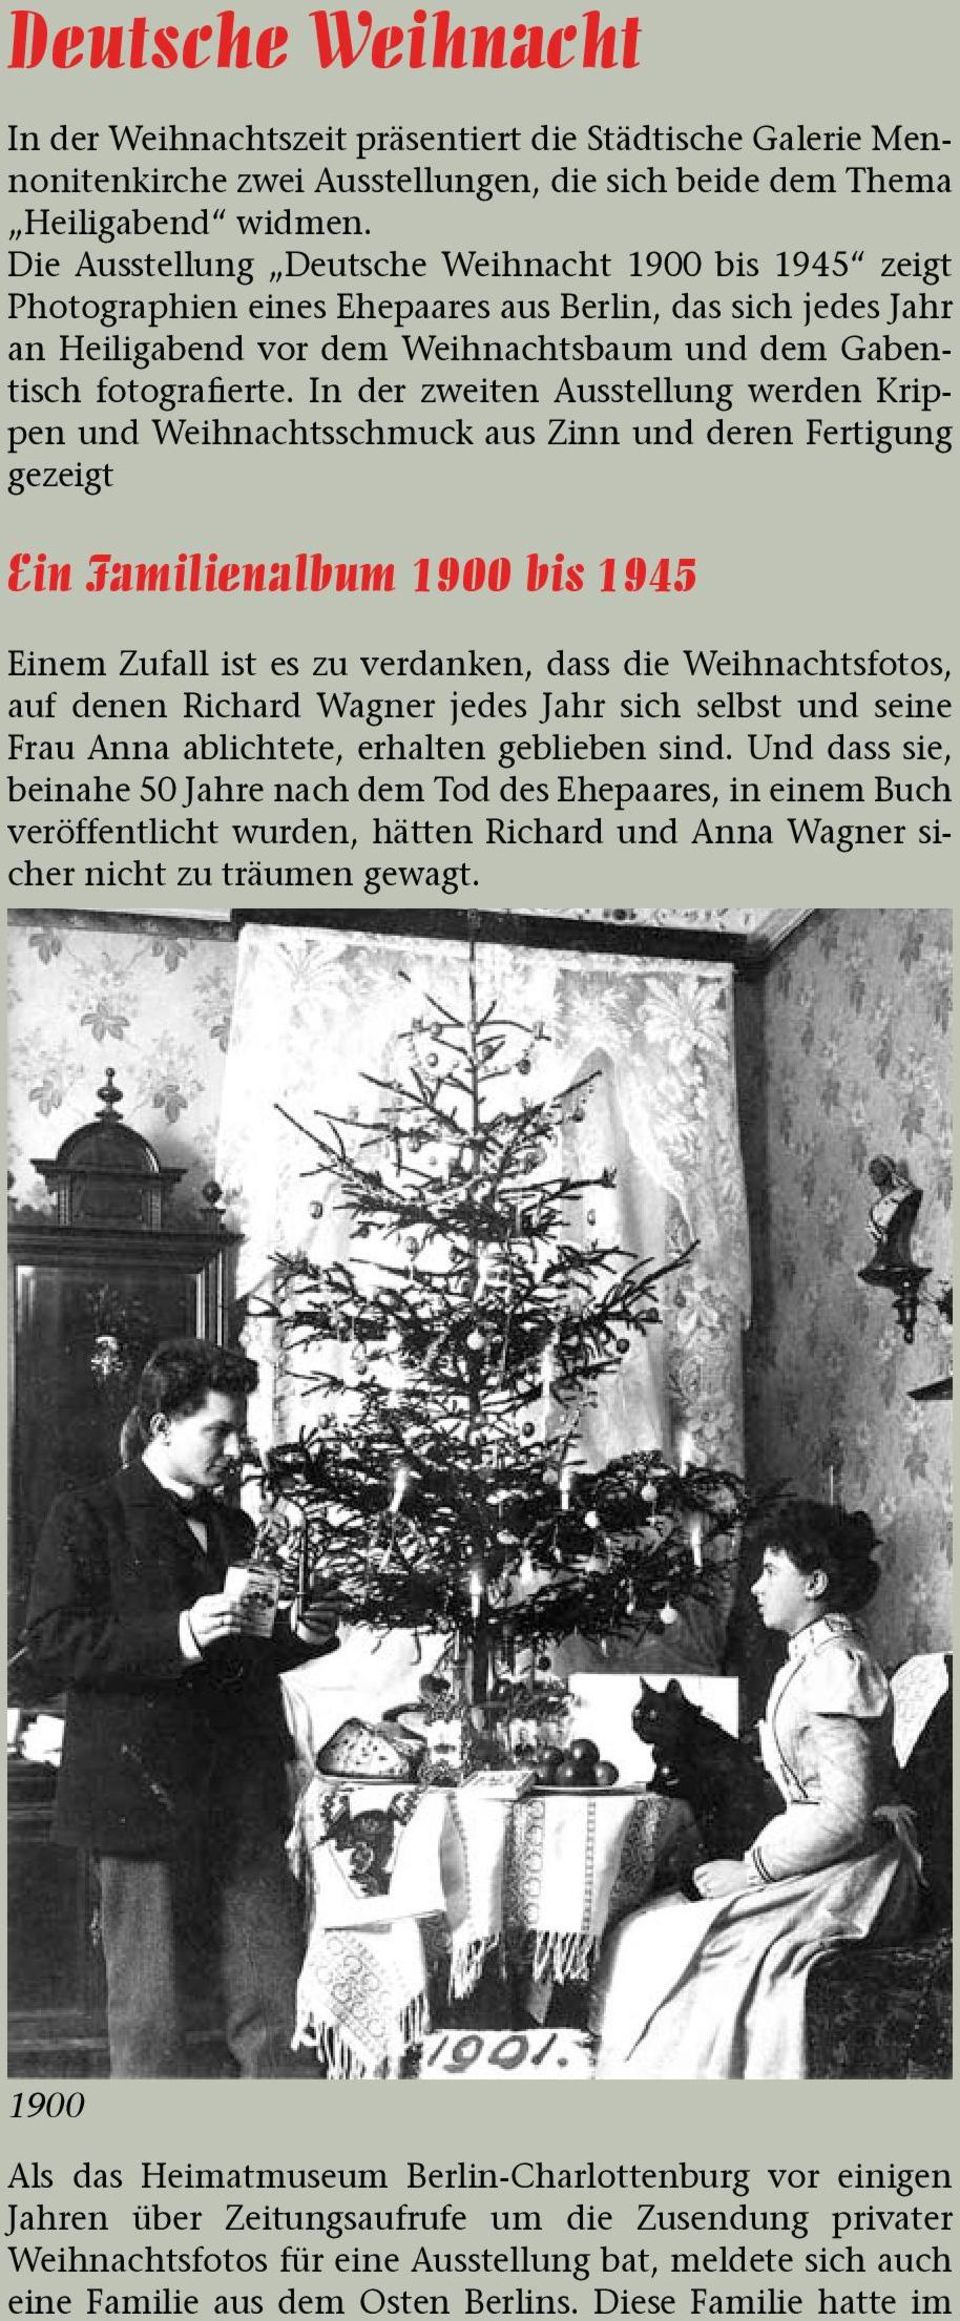 In der zweiten Ausstellung werden Krippen und Weihnachtsschmuck aus Zinn und deren Fertigung gezeigt Ein Familienalbum 1900 bis 1945 Einem Zufall ist es zu verdanken, dass die Weihnachtsfotos, auf